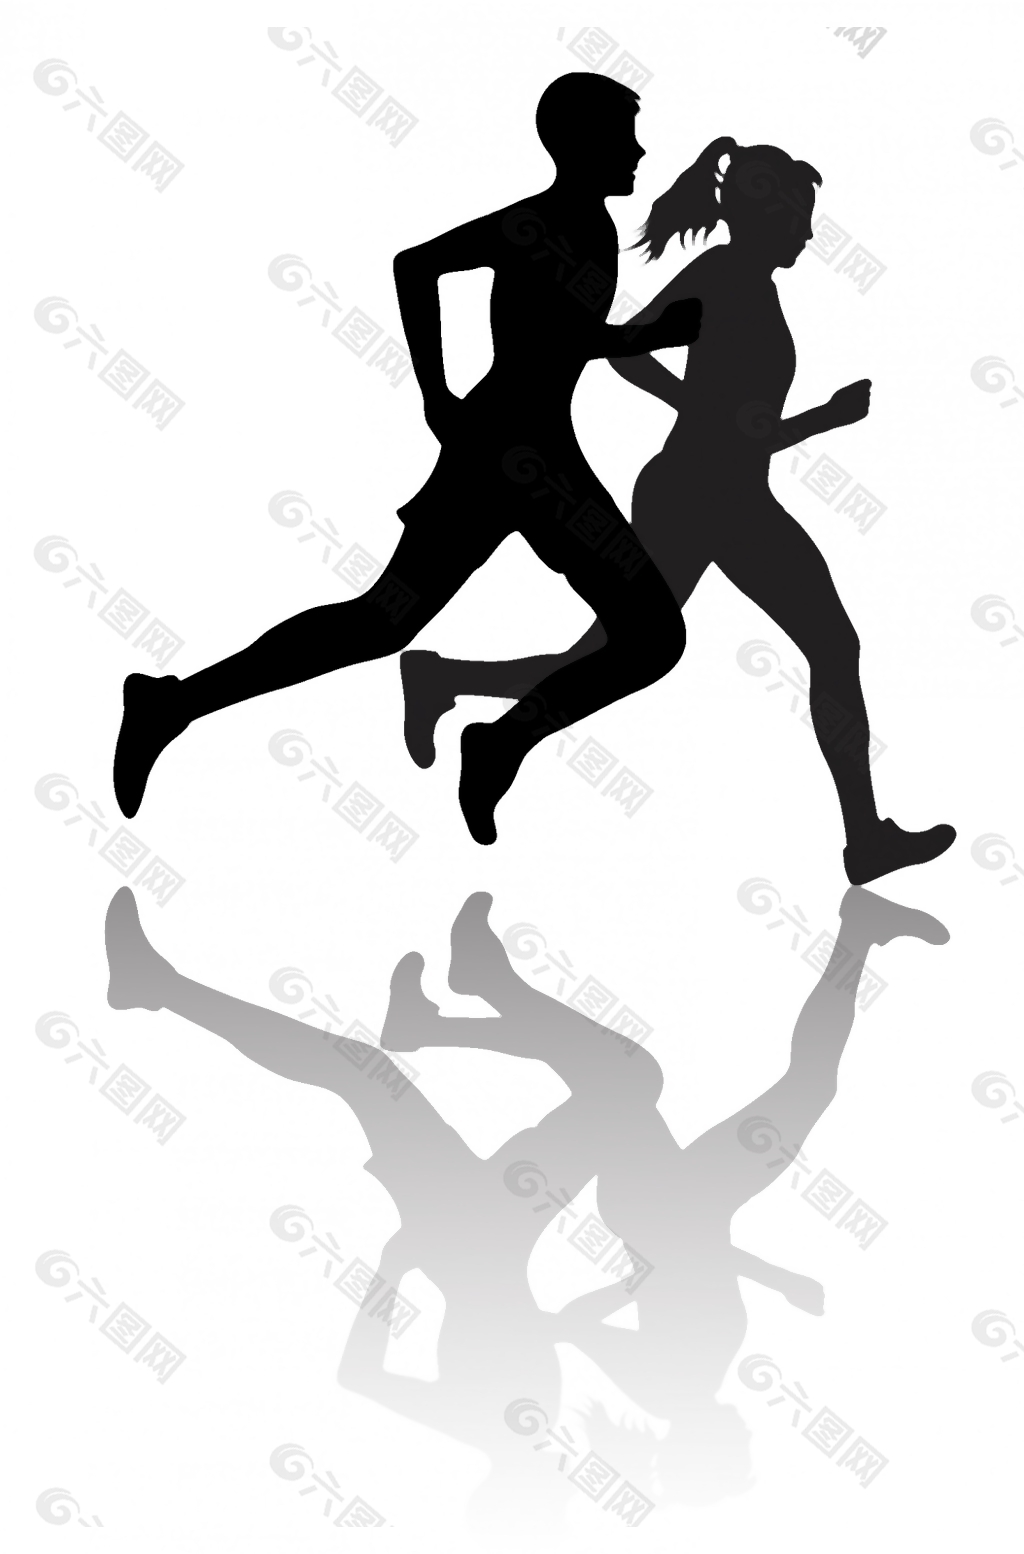 异族通婚的夫妻跑步或运动